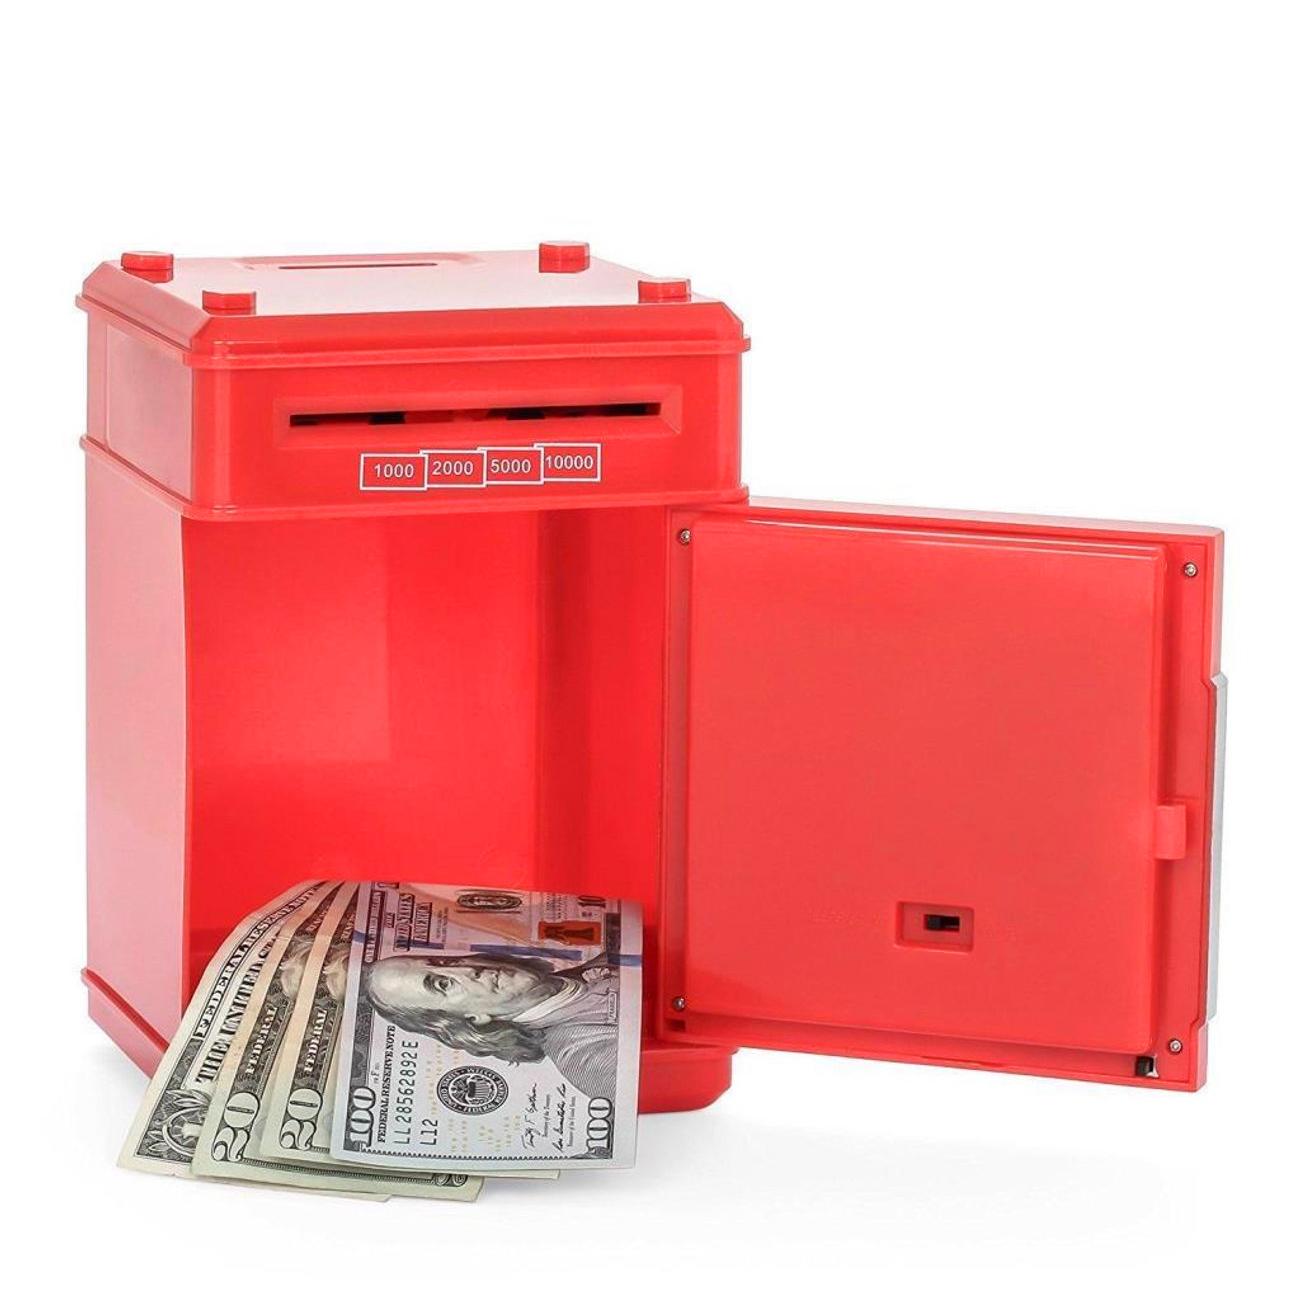 Игрушечный сейф копилка музыкальная с электронным купюроприемником UFT Cashbox Red